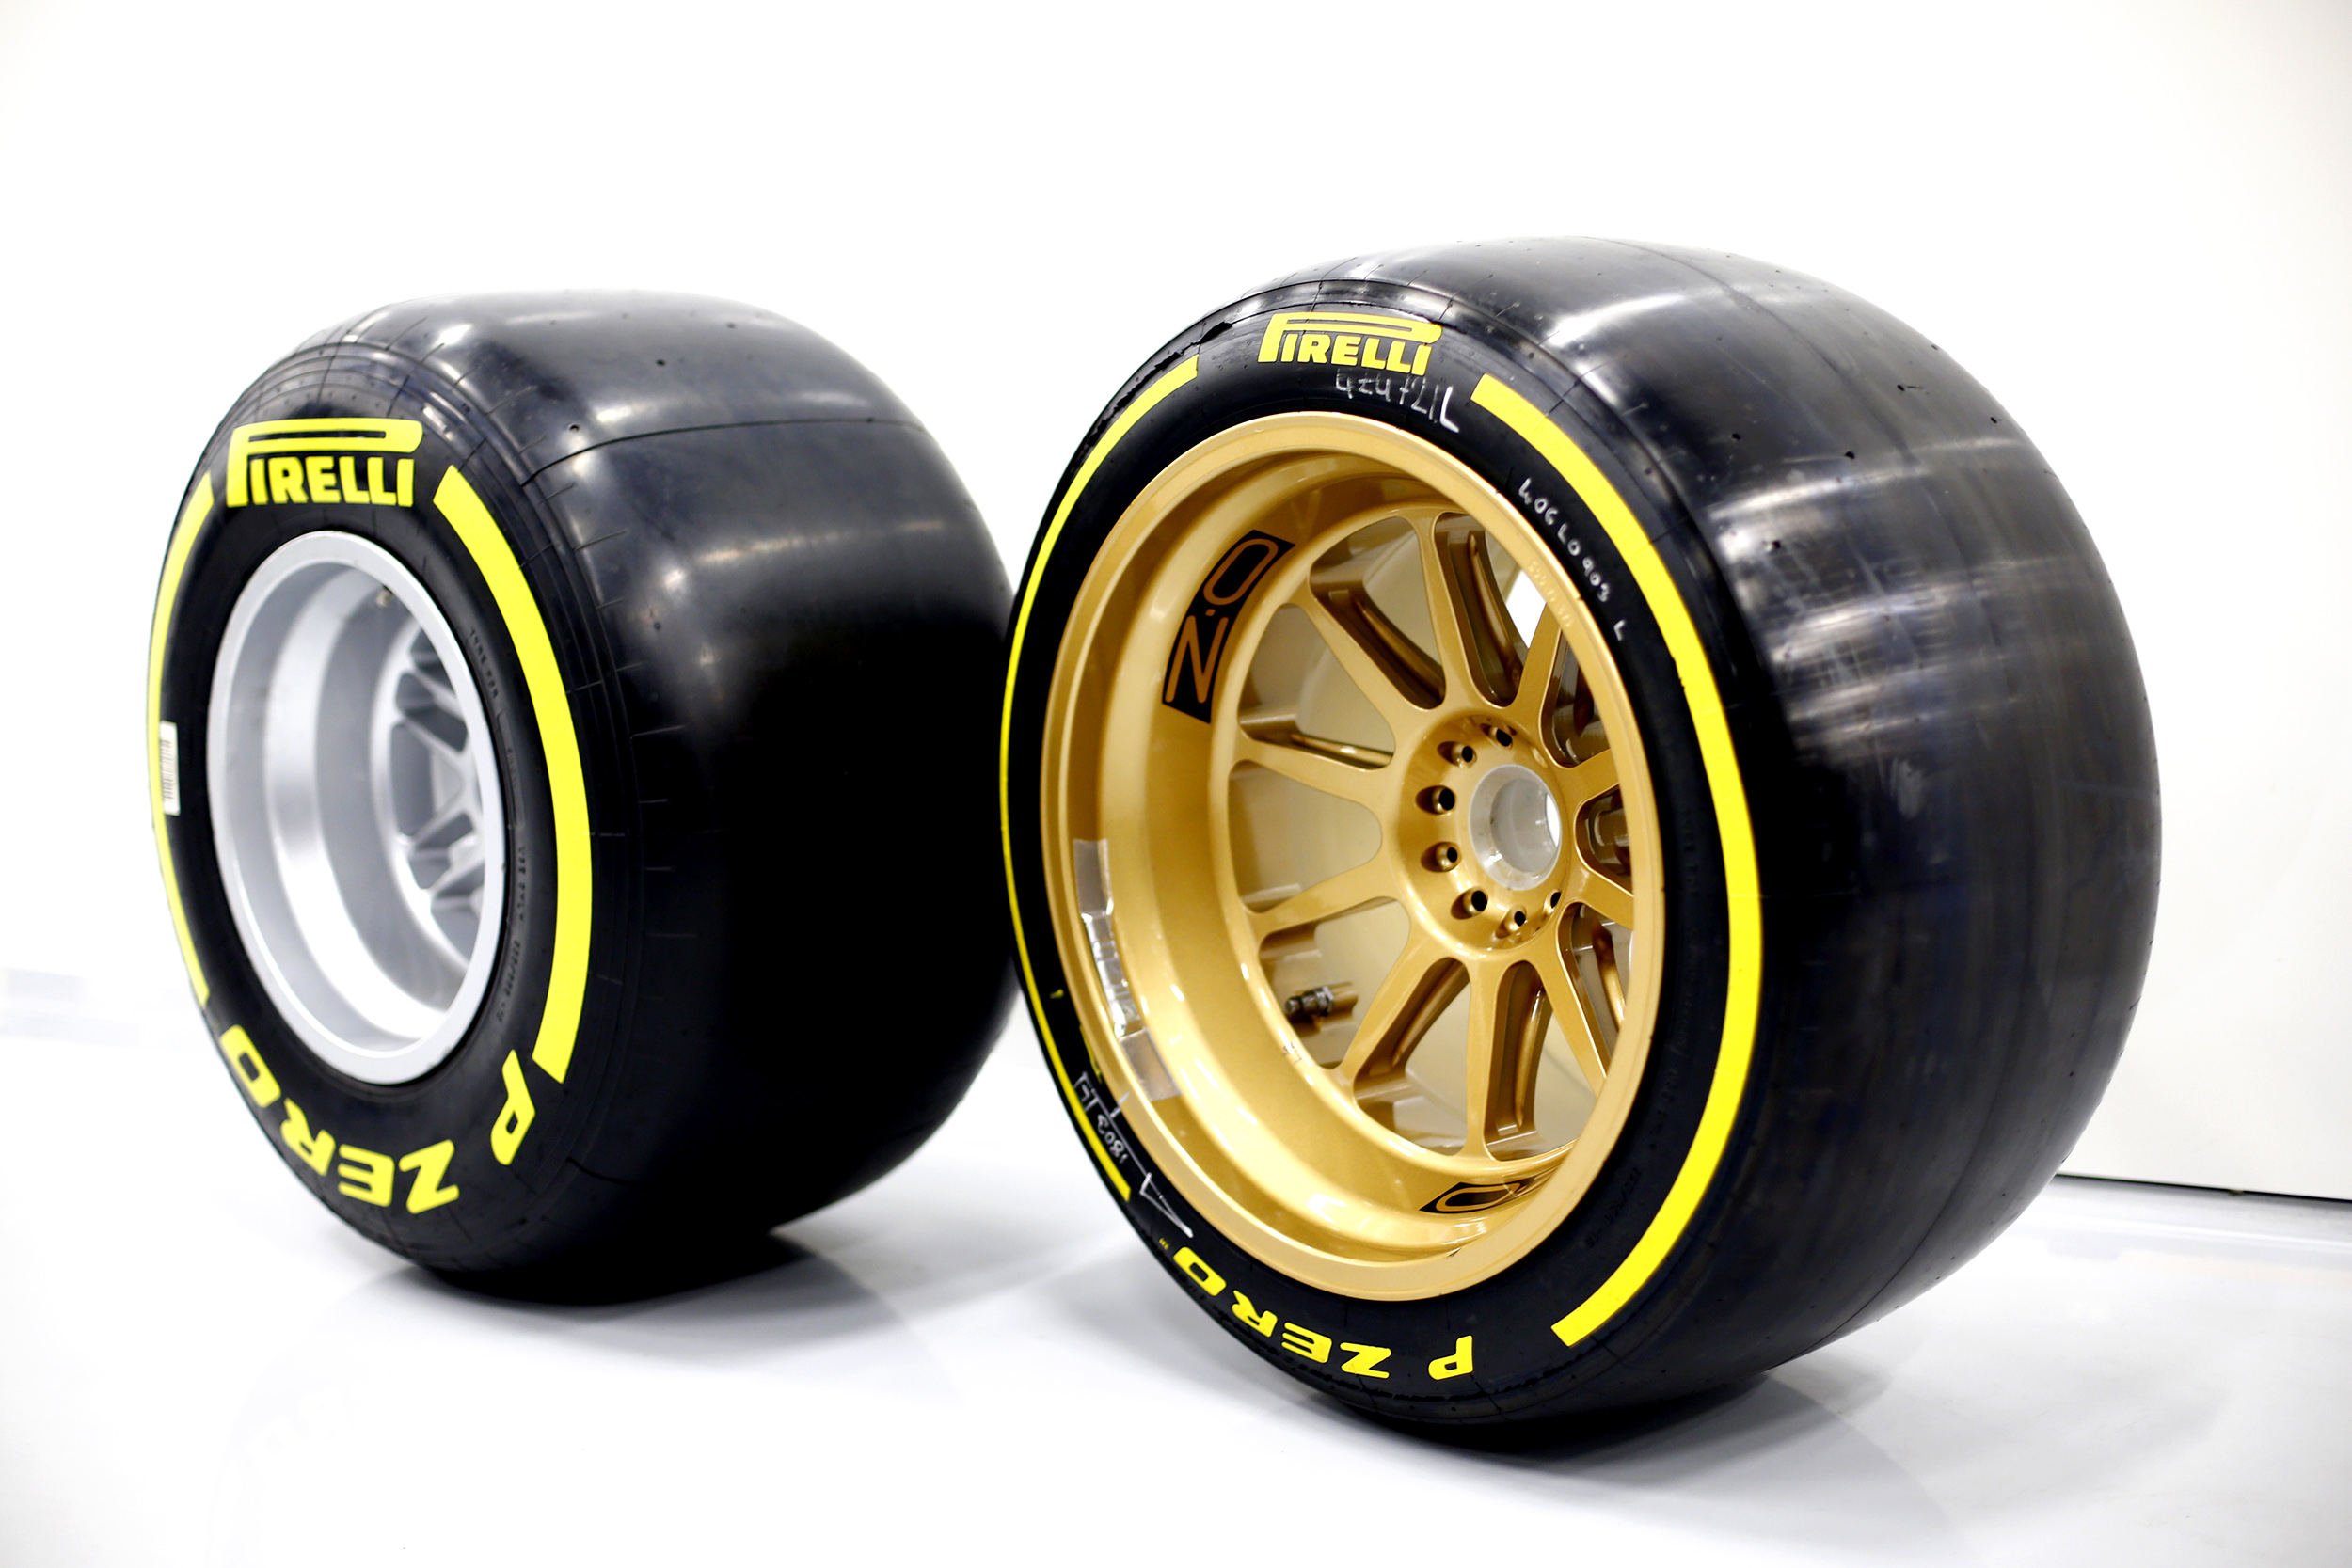 F1 Pirelli 2022 